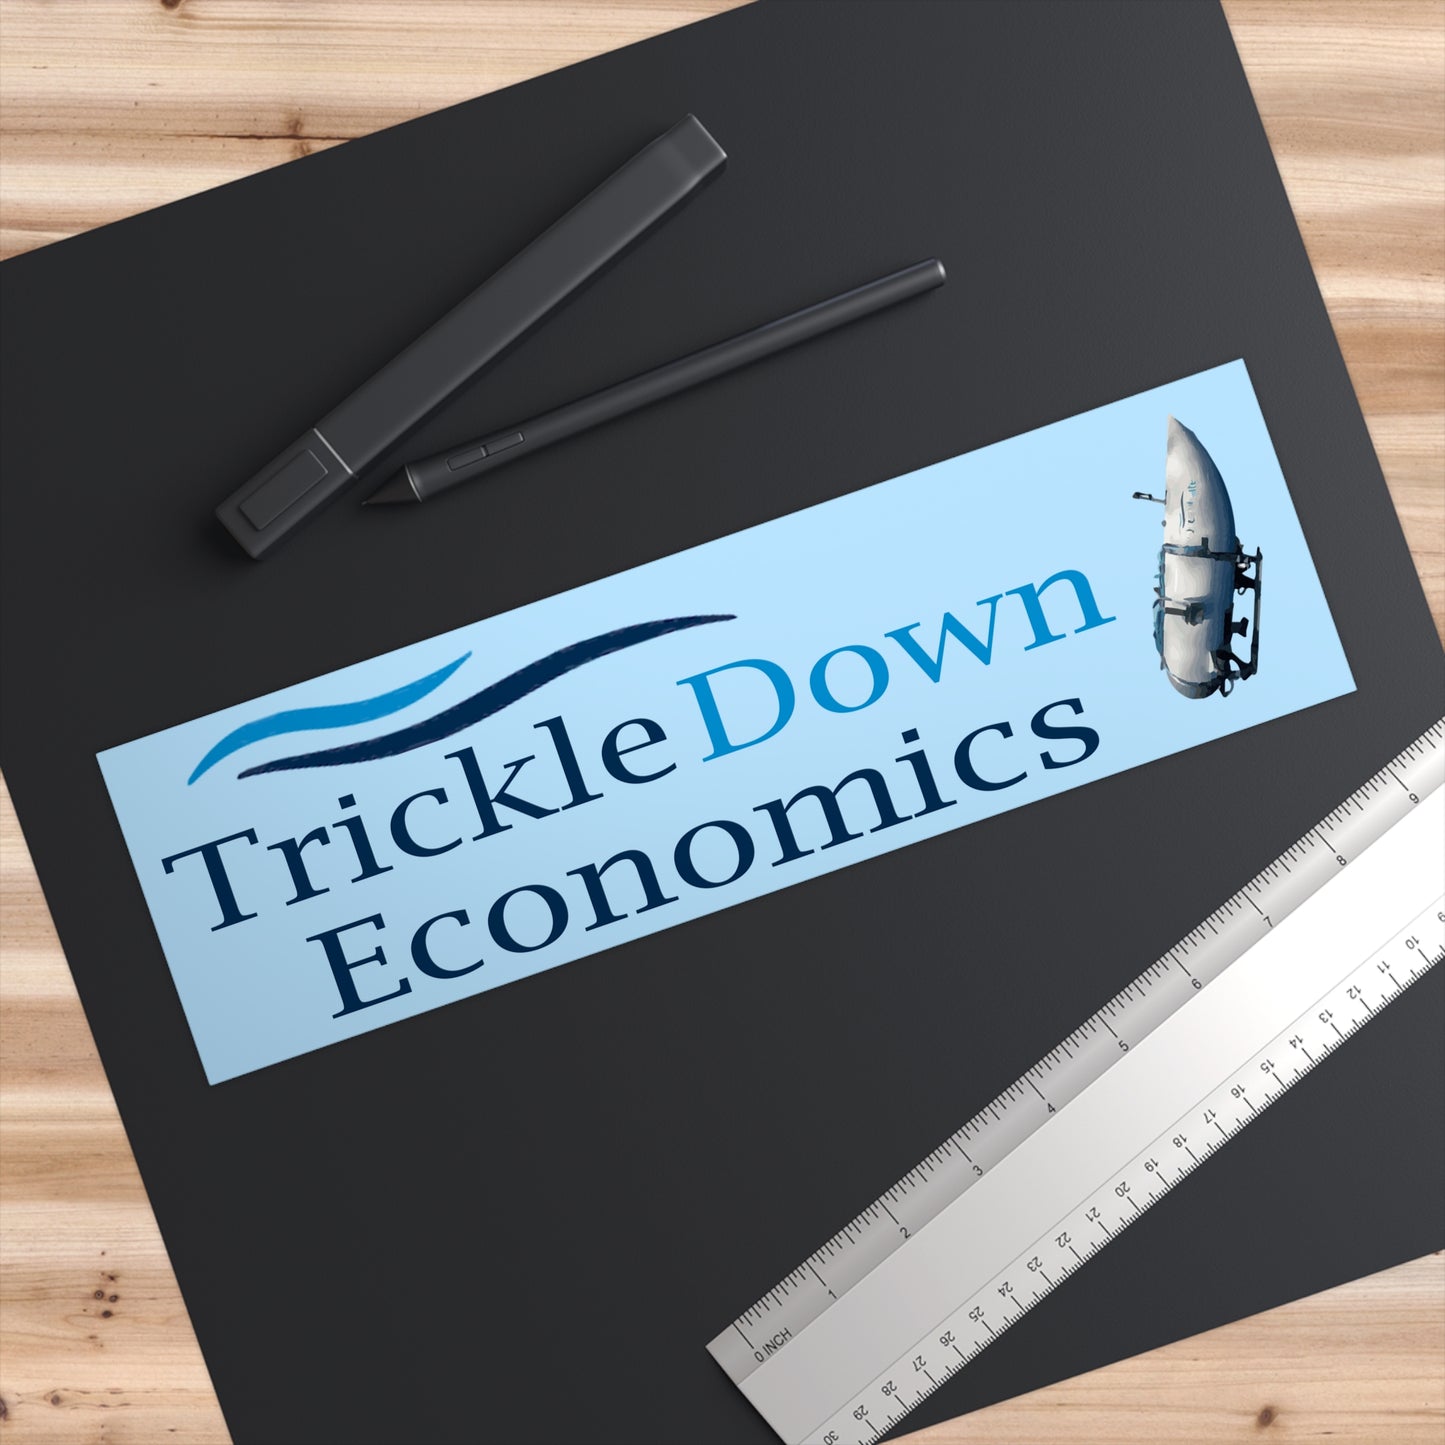 Trickle Down Economics